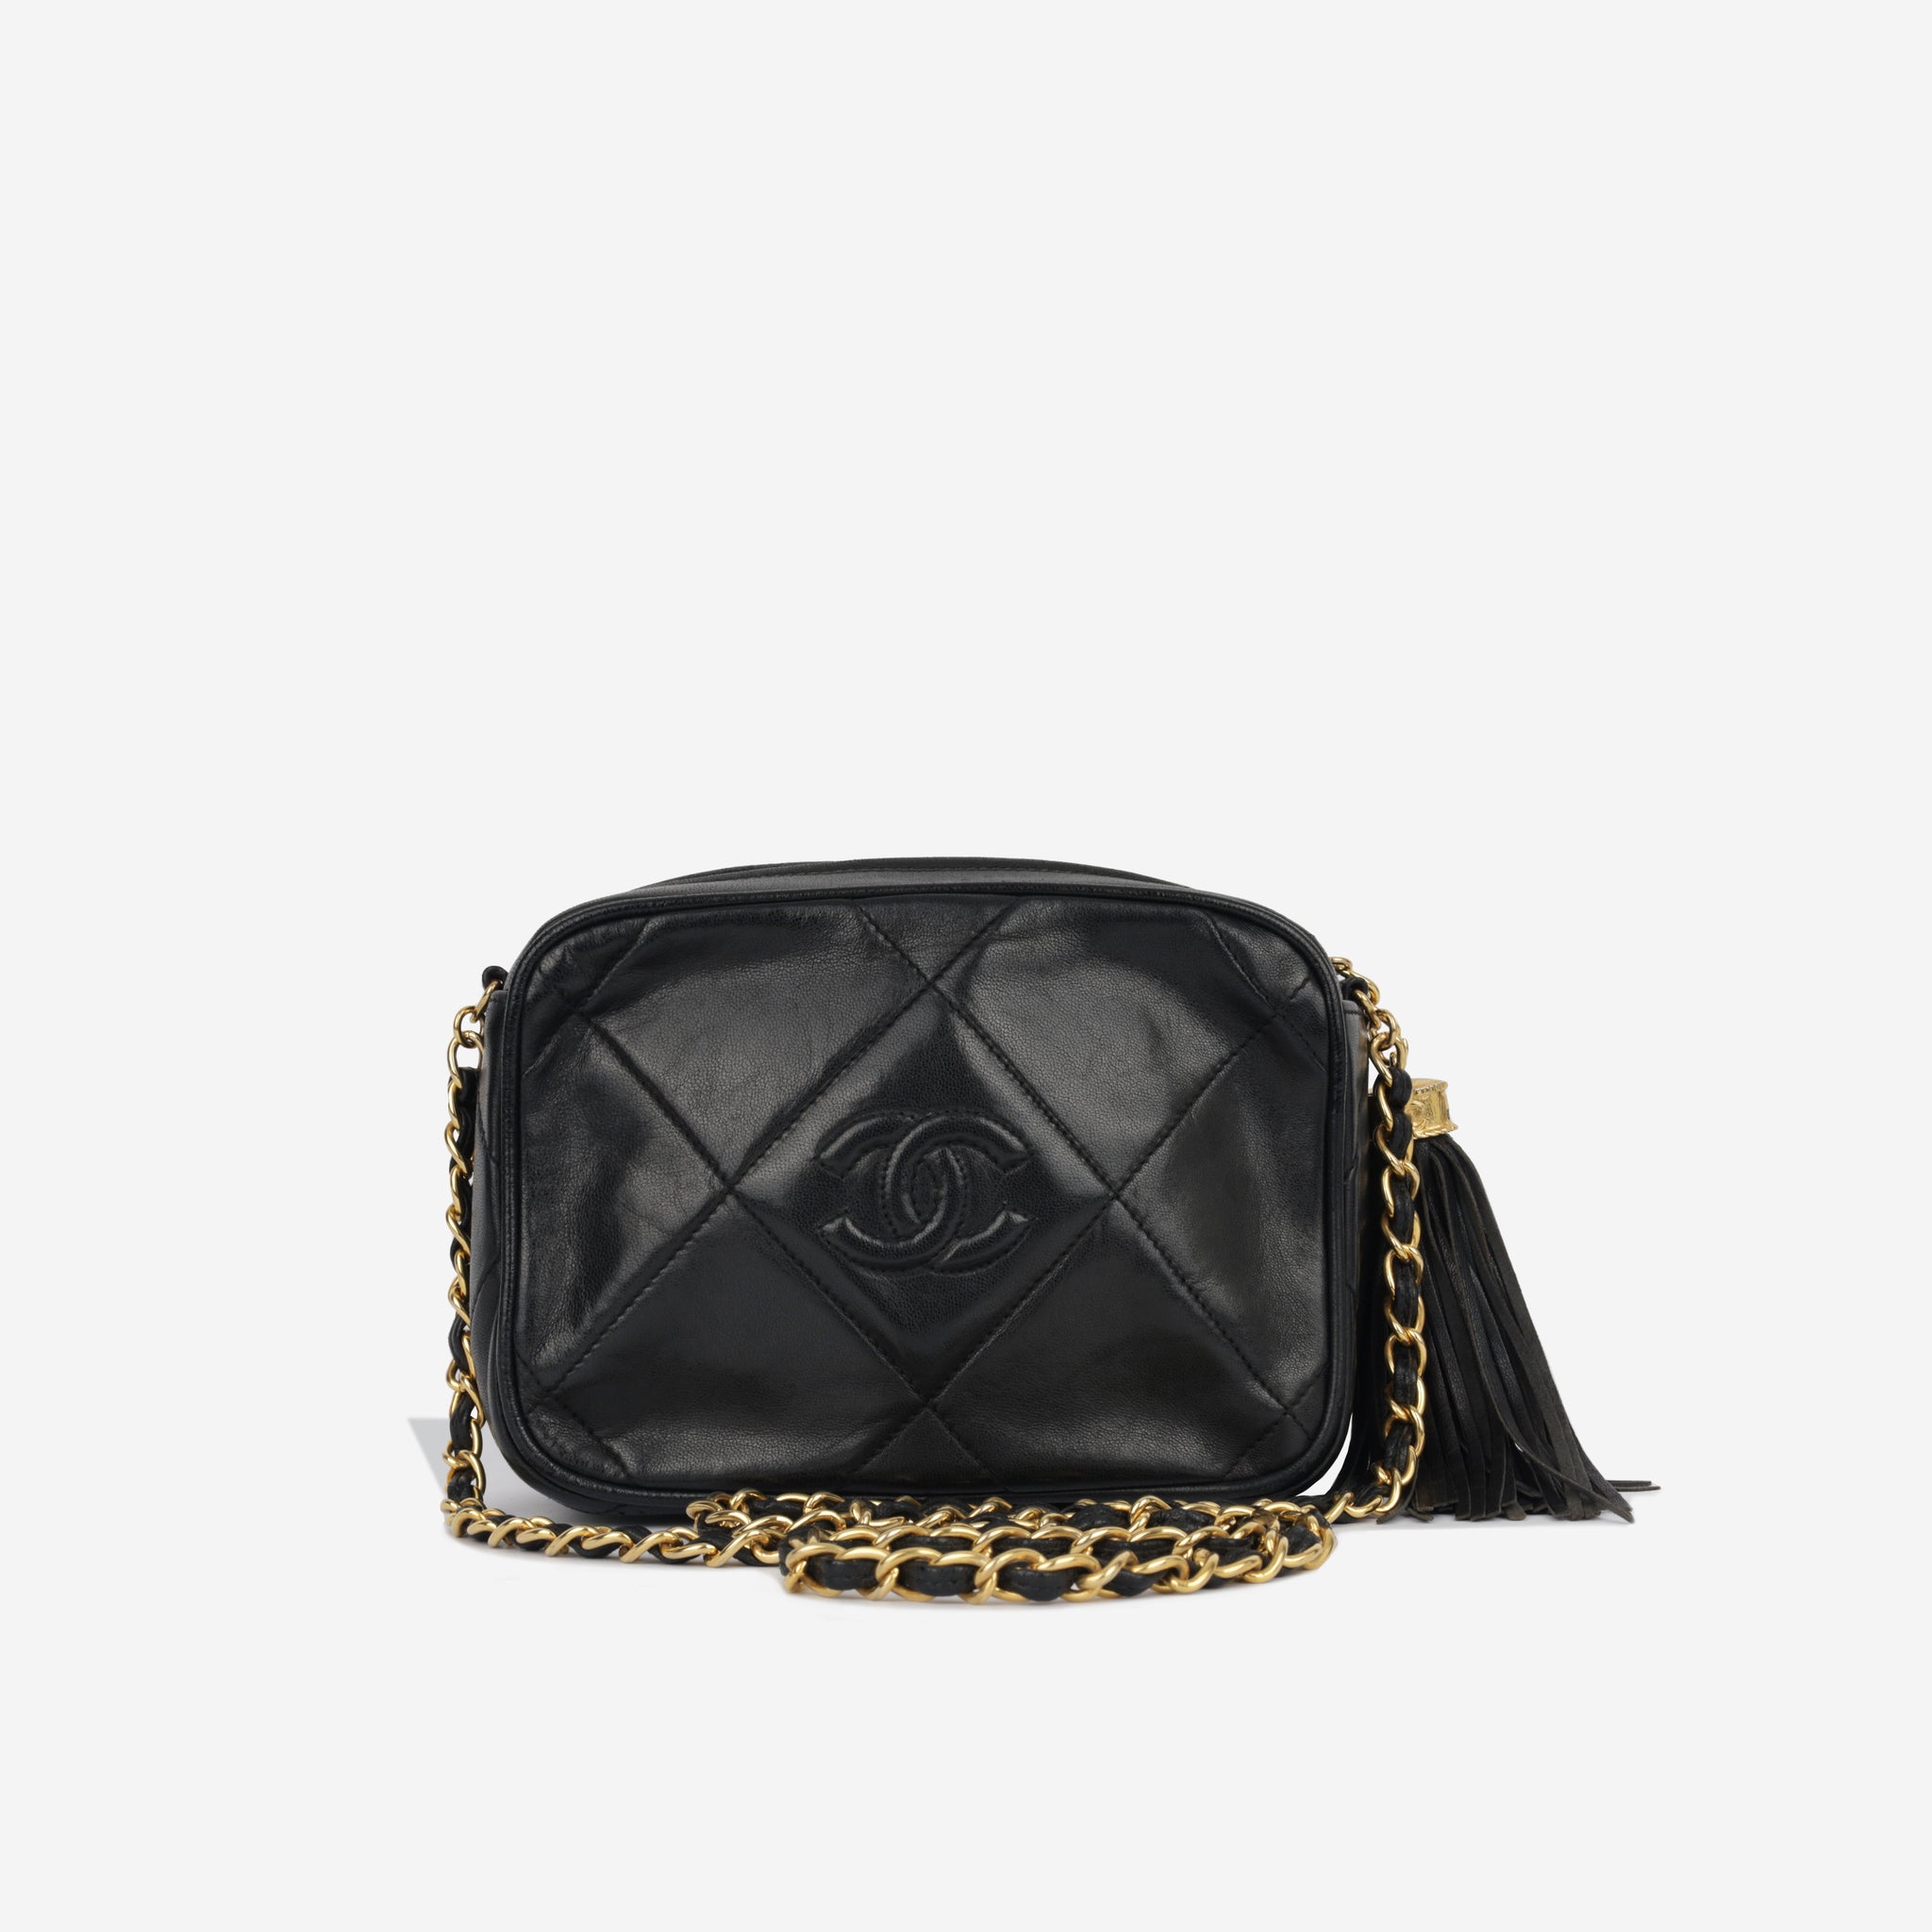 Chanel - Camera Bag - Black Lambskin GHW - Vintage